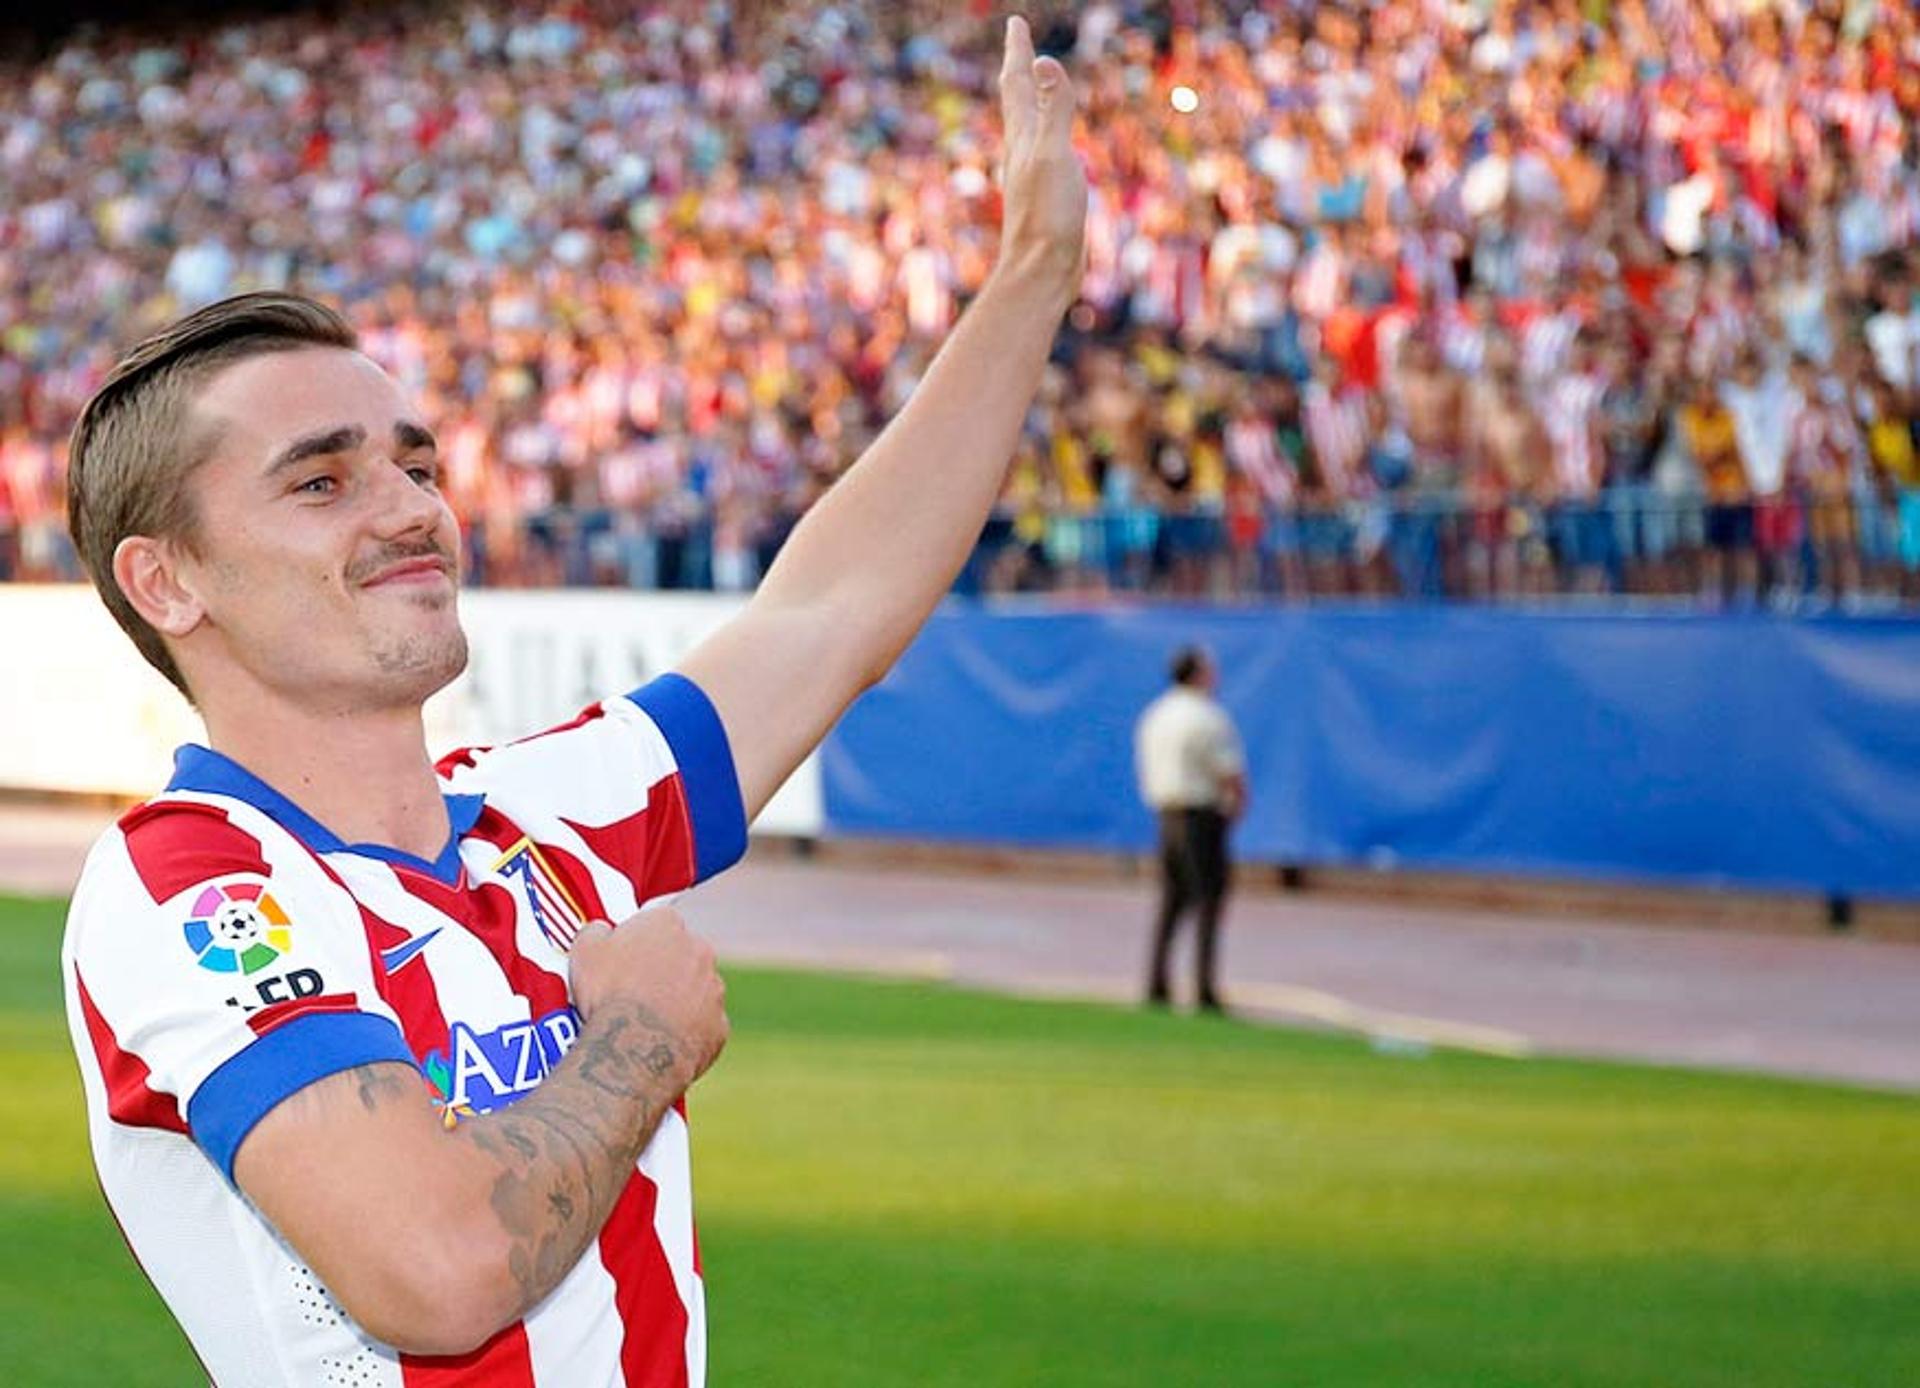 O jogador já foi apresentado à torcida colchonera (Foto: Reprodução / Site Oficial Atlético de Madrid)